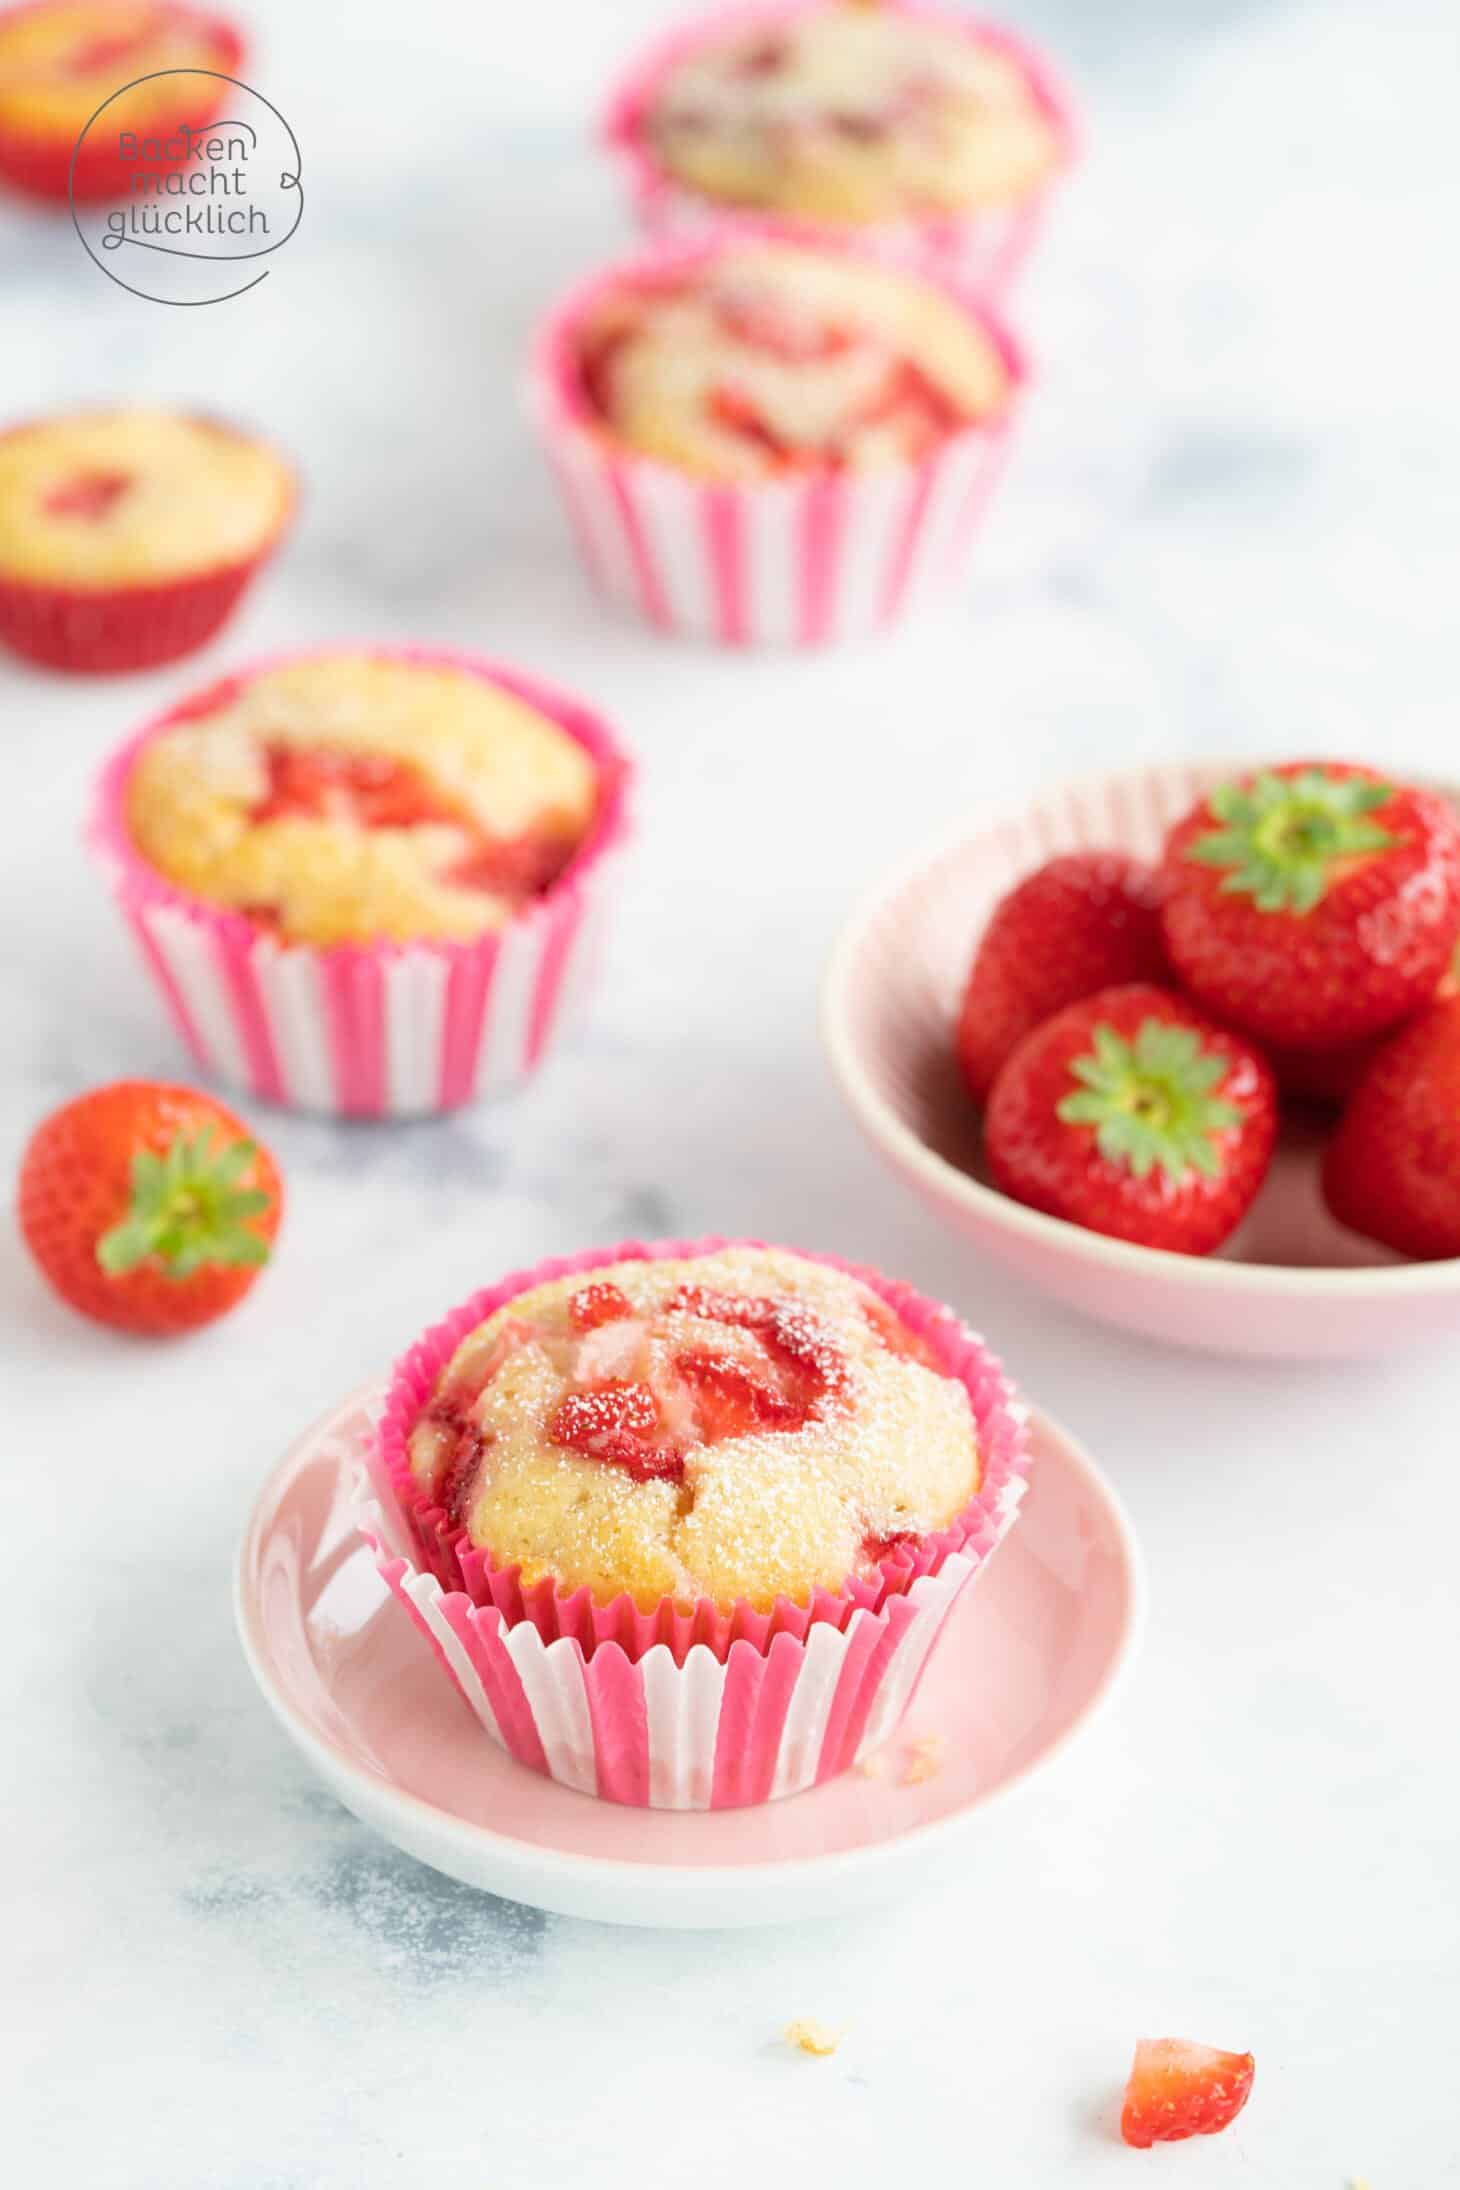 Erdbeer-Muffins | Backen macht glücklich